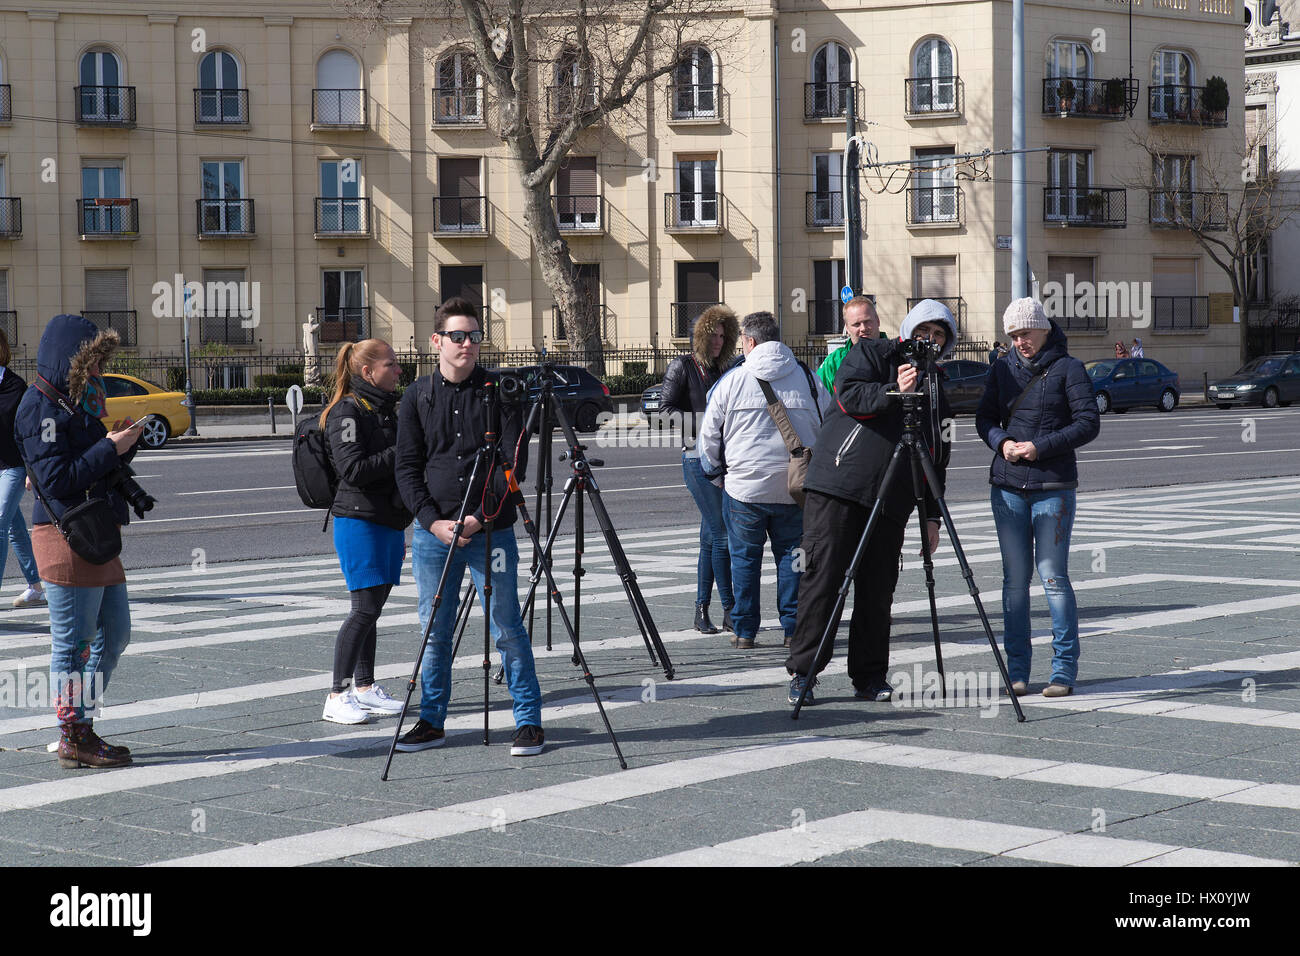 Eine Gruppe junger Leute mit Kameras auf Stativen Heldenplatz in Budapest Ungarn Stockfoto